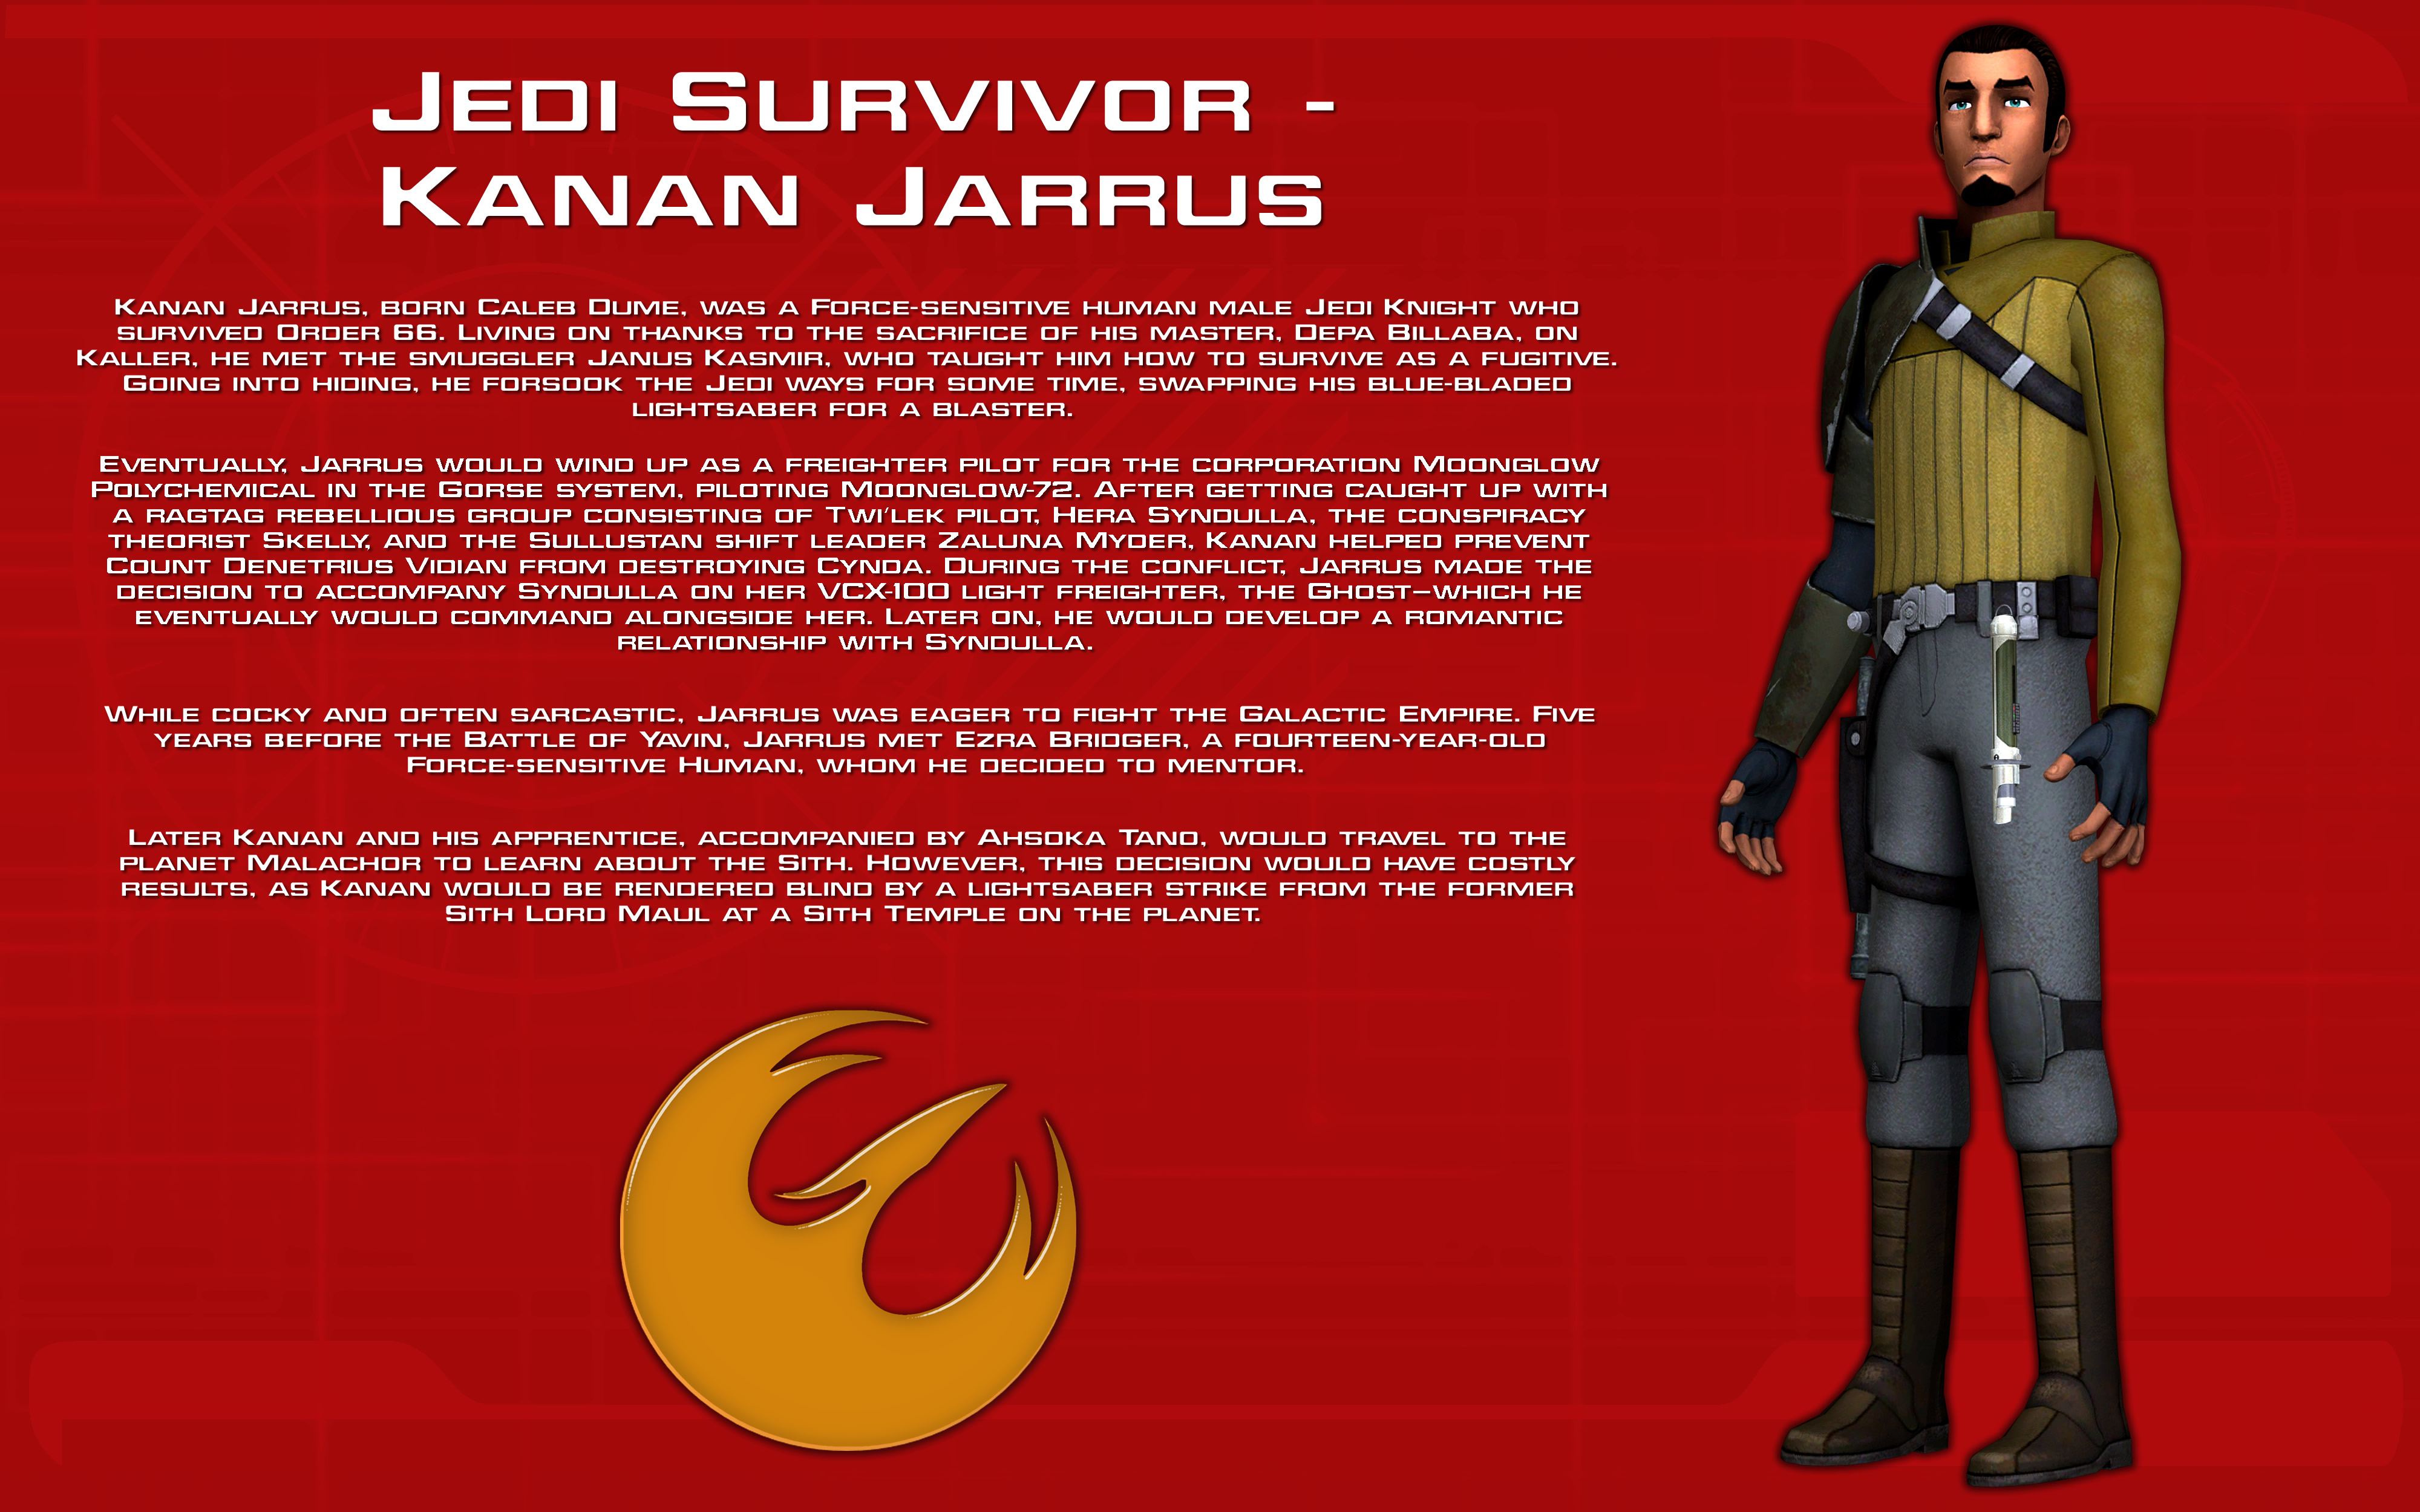 Kanan Jarrus themed outfit I made in Jedi Survivor : r/StarWarsJediSurvivor